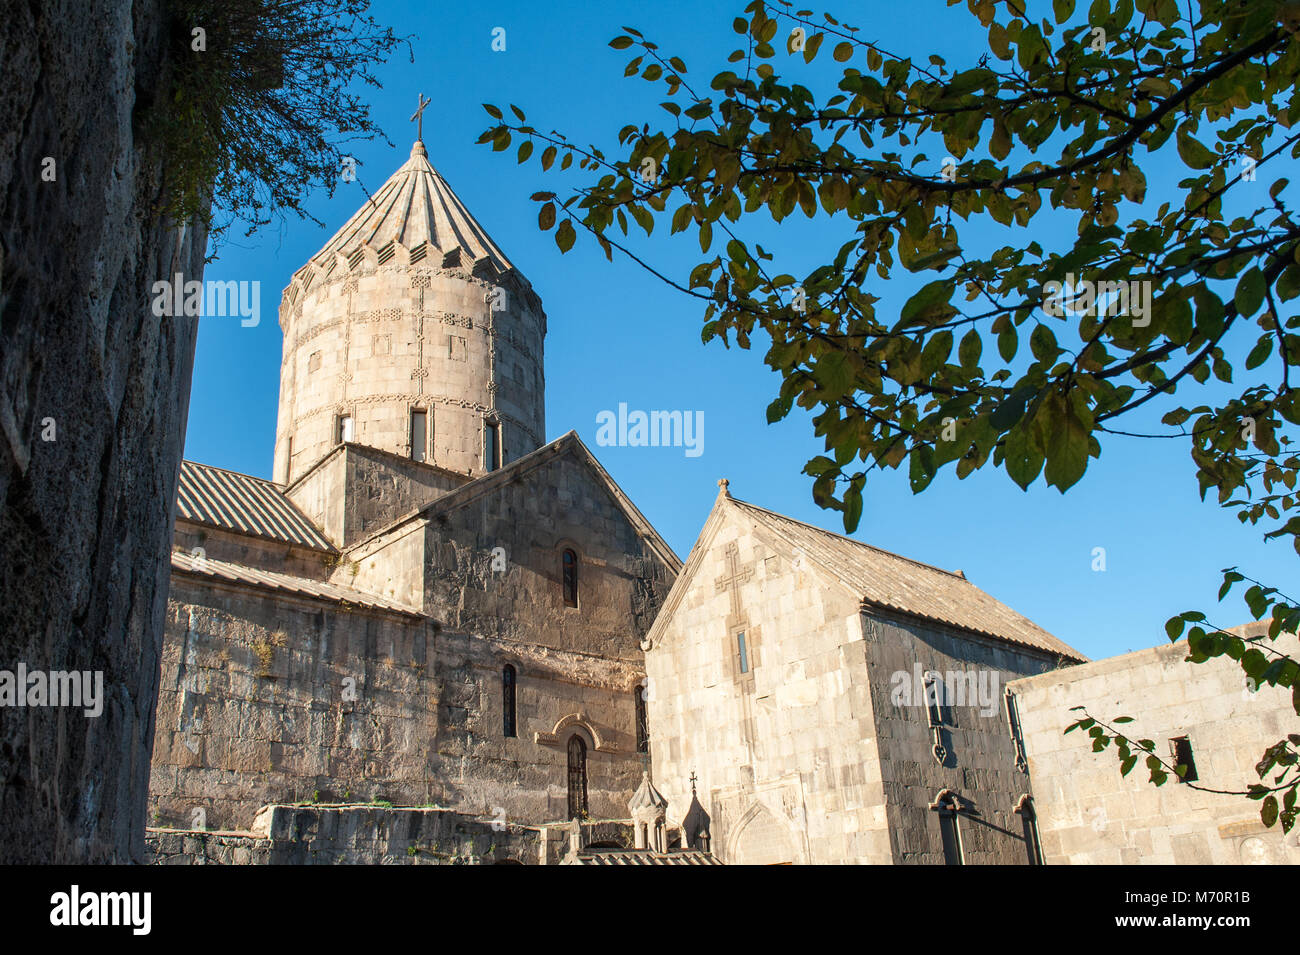 Das Kloster Tatev ist ein 9. Jahrhundert Kloster auf einer großen Basalt Plateau in der Nähe der Tatev Dorf in Ararat Provinz im Südosten von Armenien. Th Stockfoto